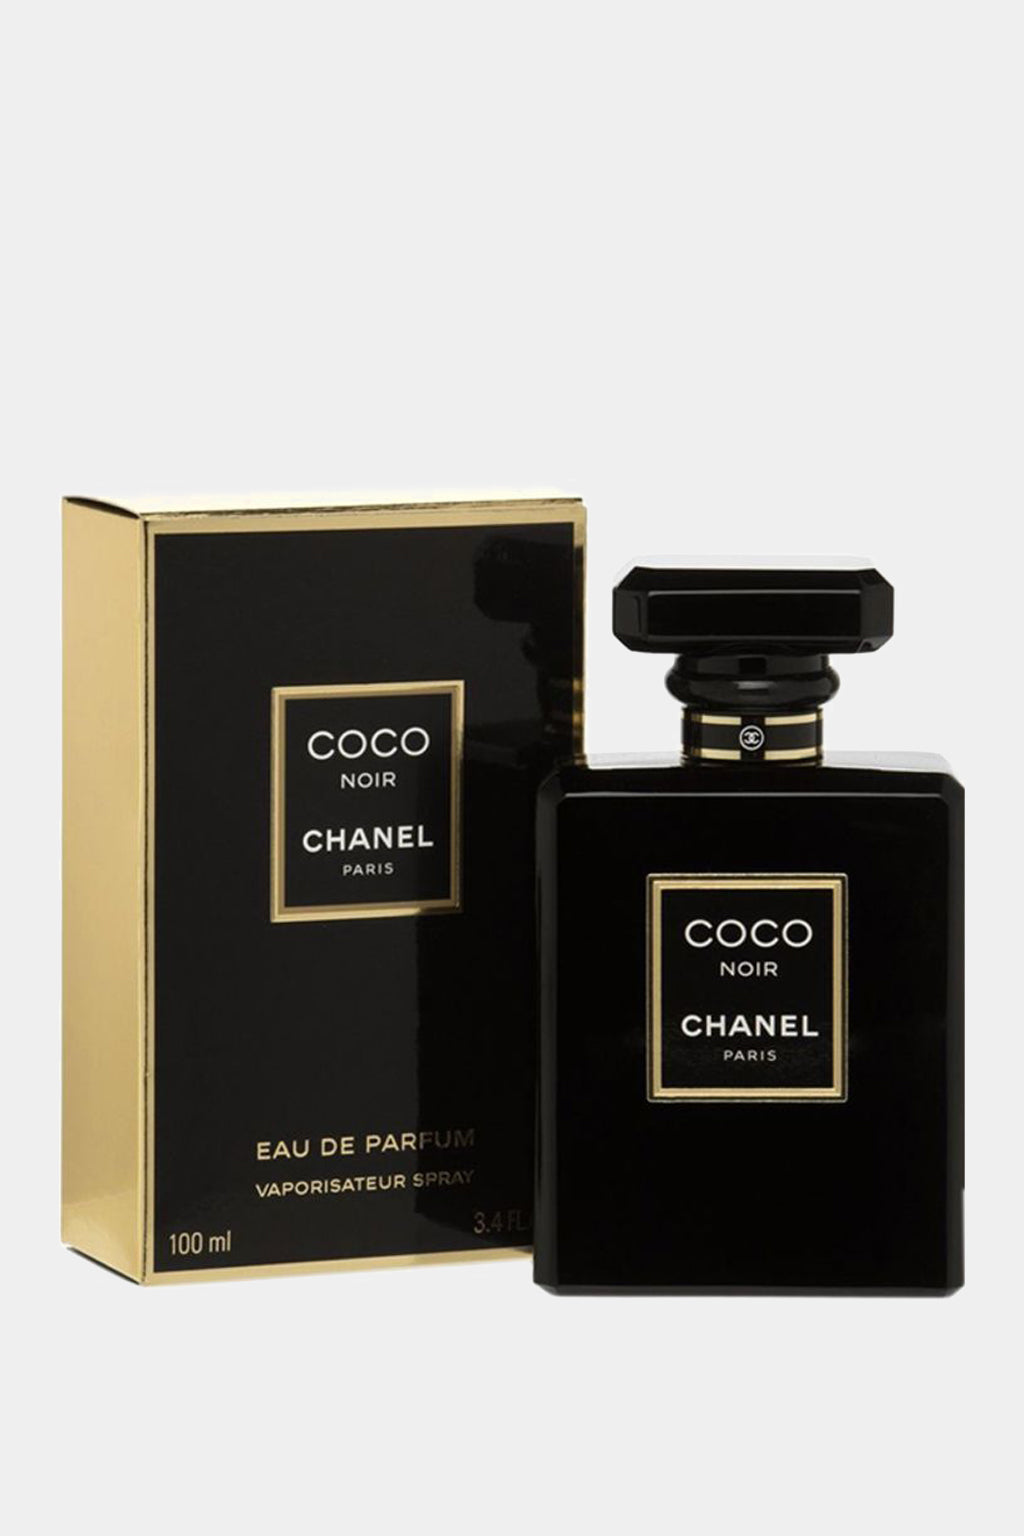 Chanel - Coco Noir Eau de Parfum